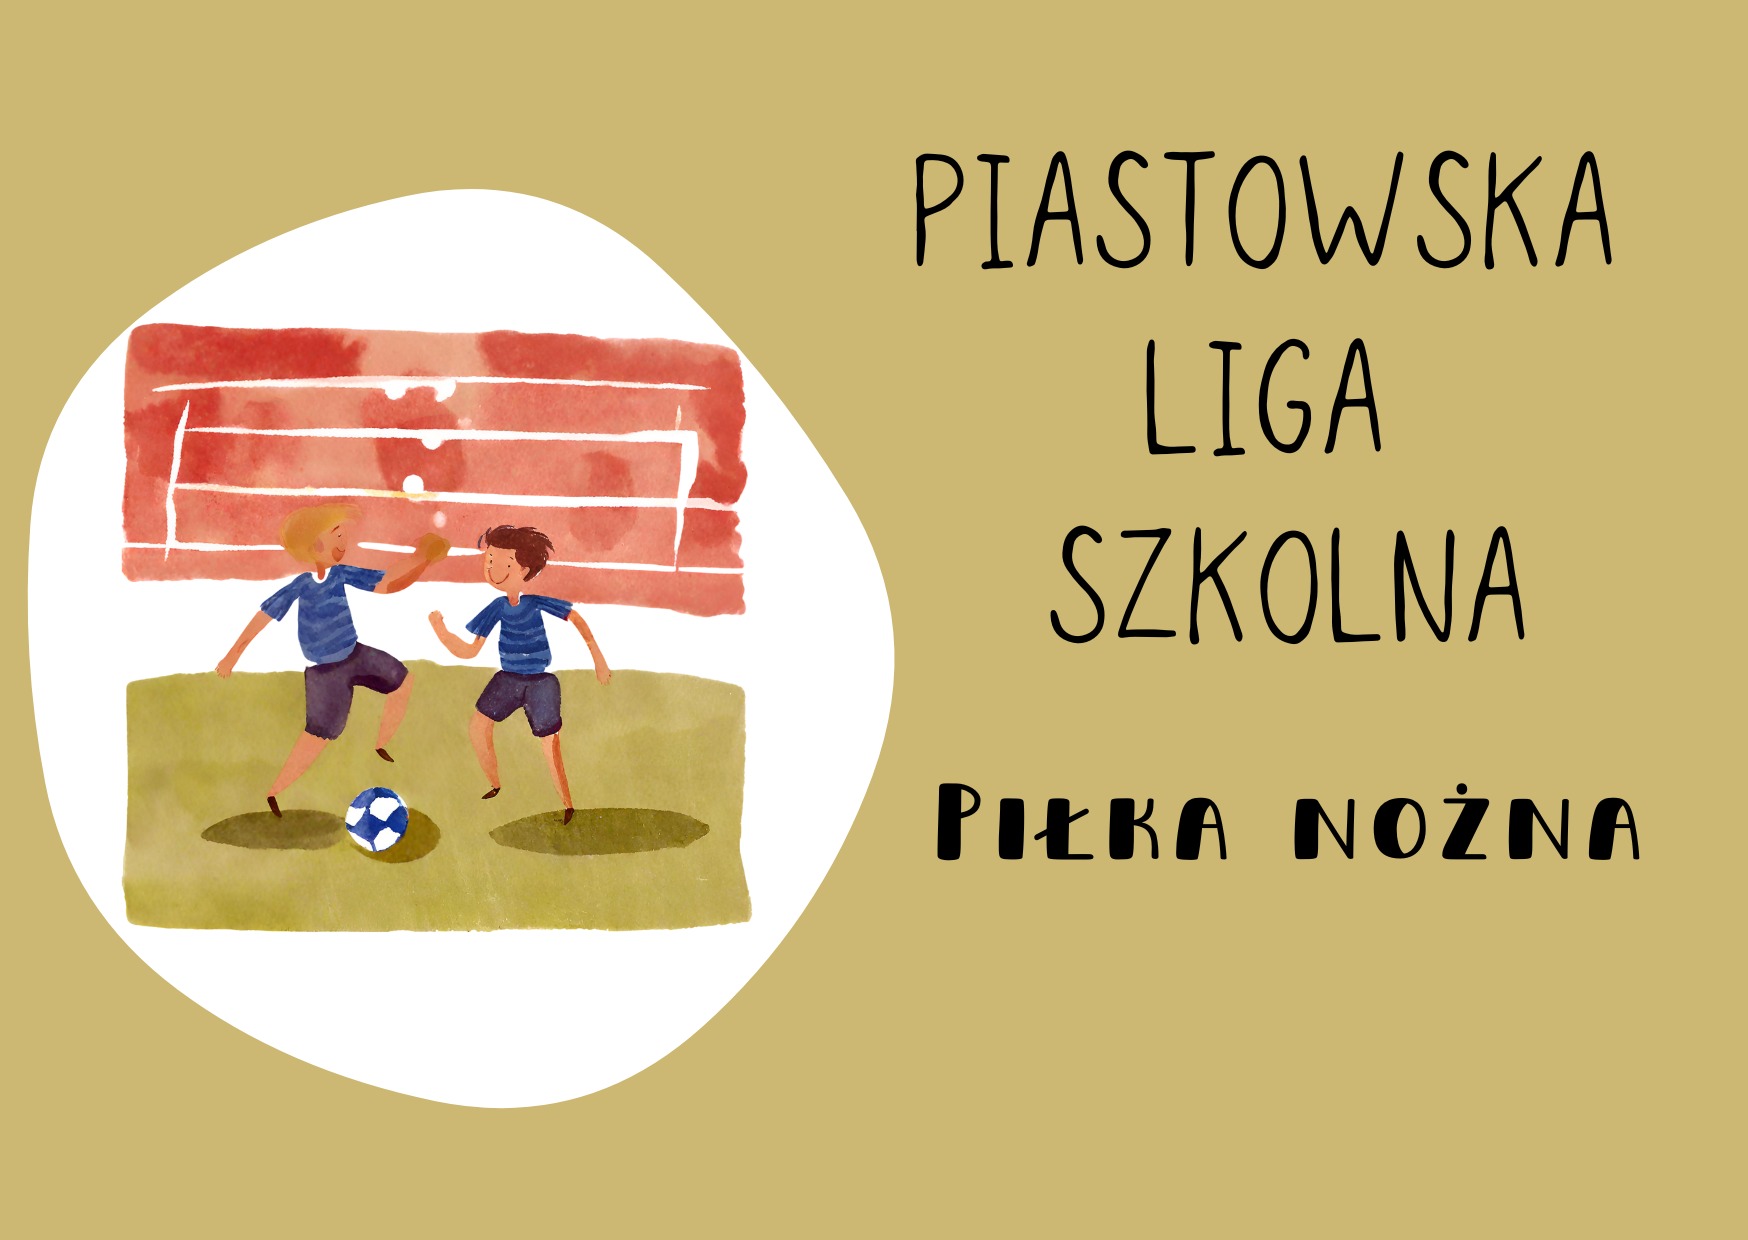 Piastowska Liga Szkolna - piłka nożna chłopców - Obrazek 1